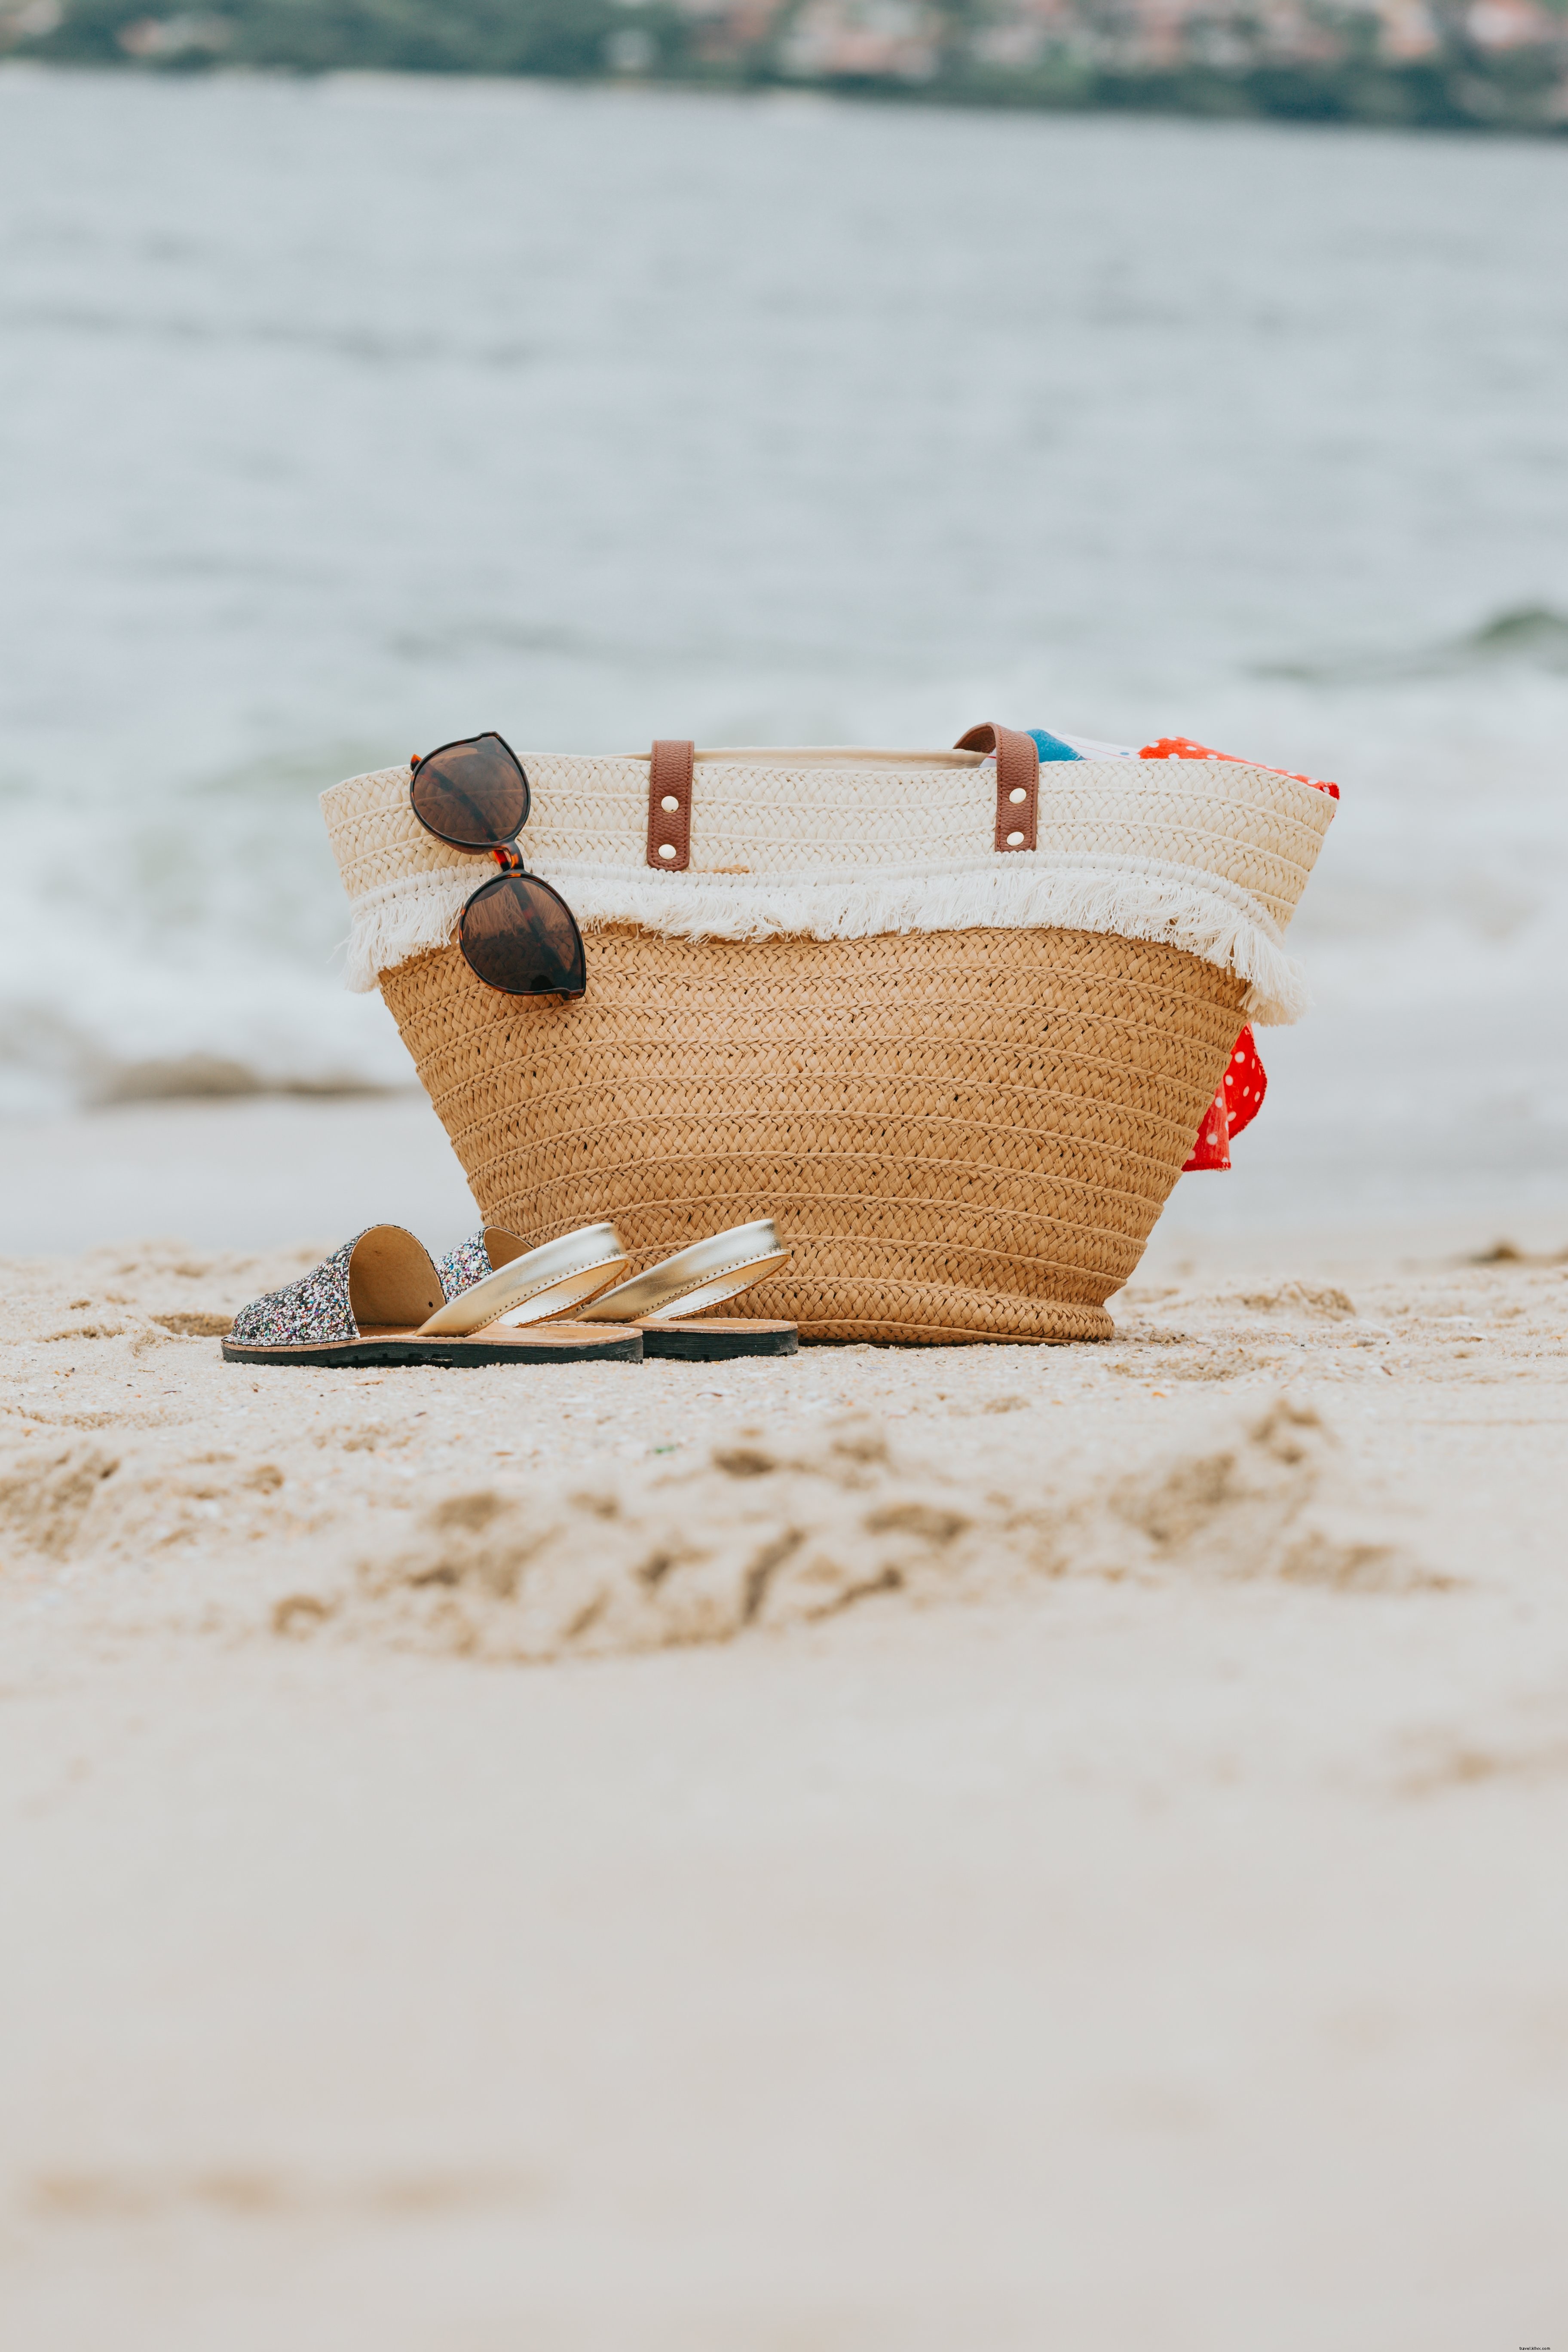 Sac de plage en osier et sandales sur une photo de plage de sable blanc 